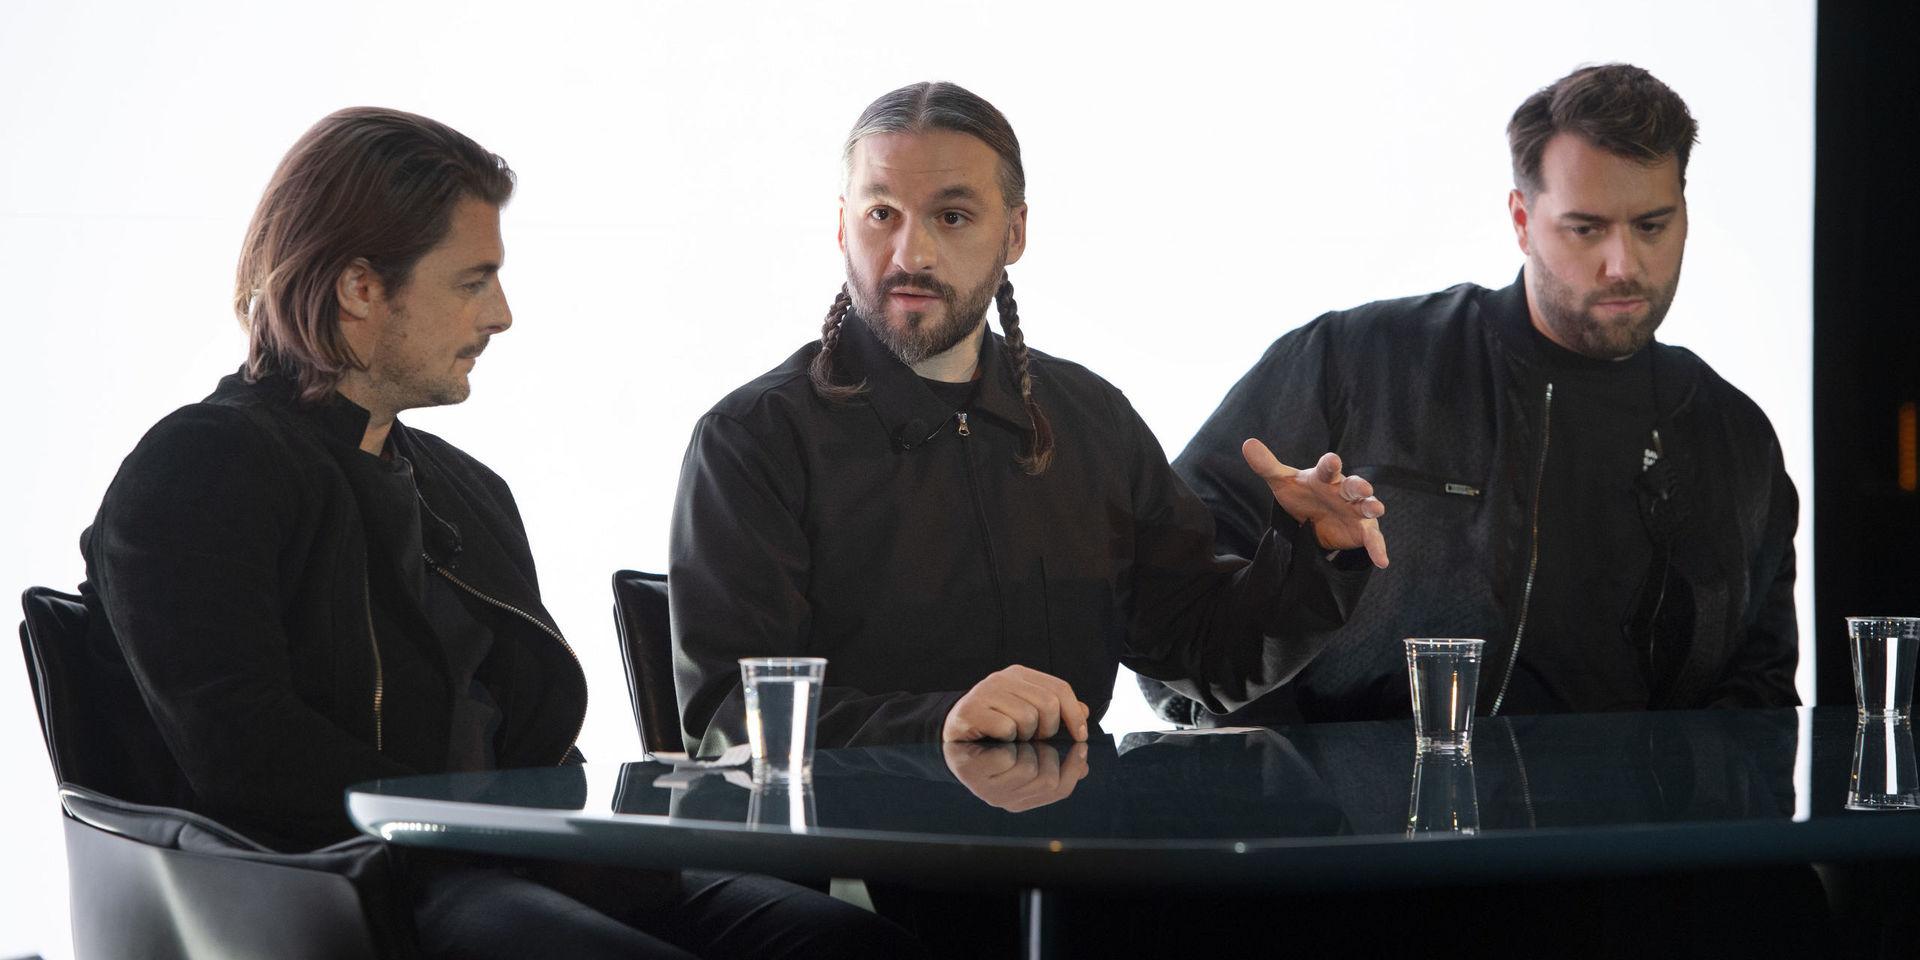 Axwell, Steve Angello och Sebastian Ingrosso i Swedish House Mafia håller presskonferens på Berns för att berätta om sin återförening och nya turnéplaner.